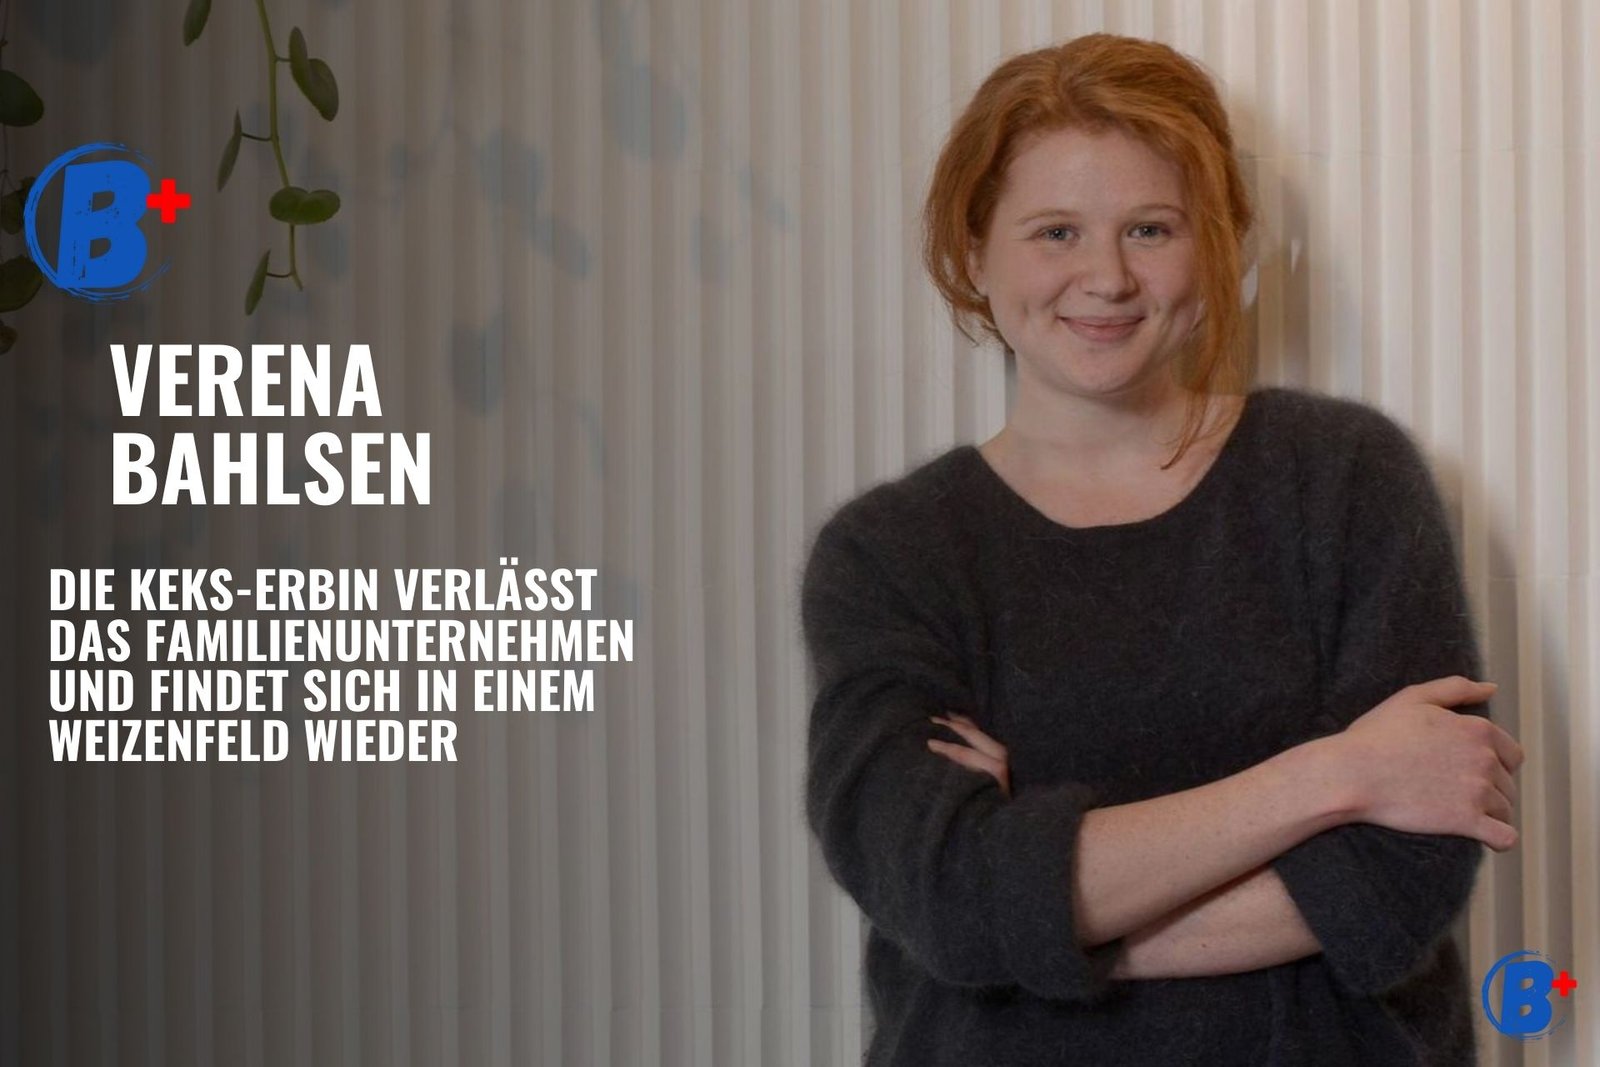 Verena Bahlsen